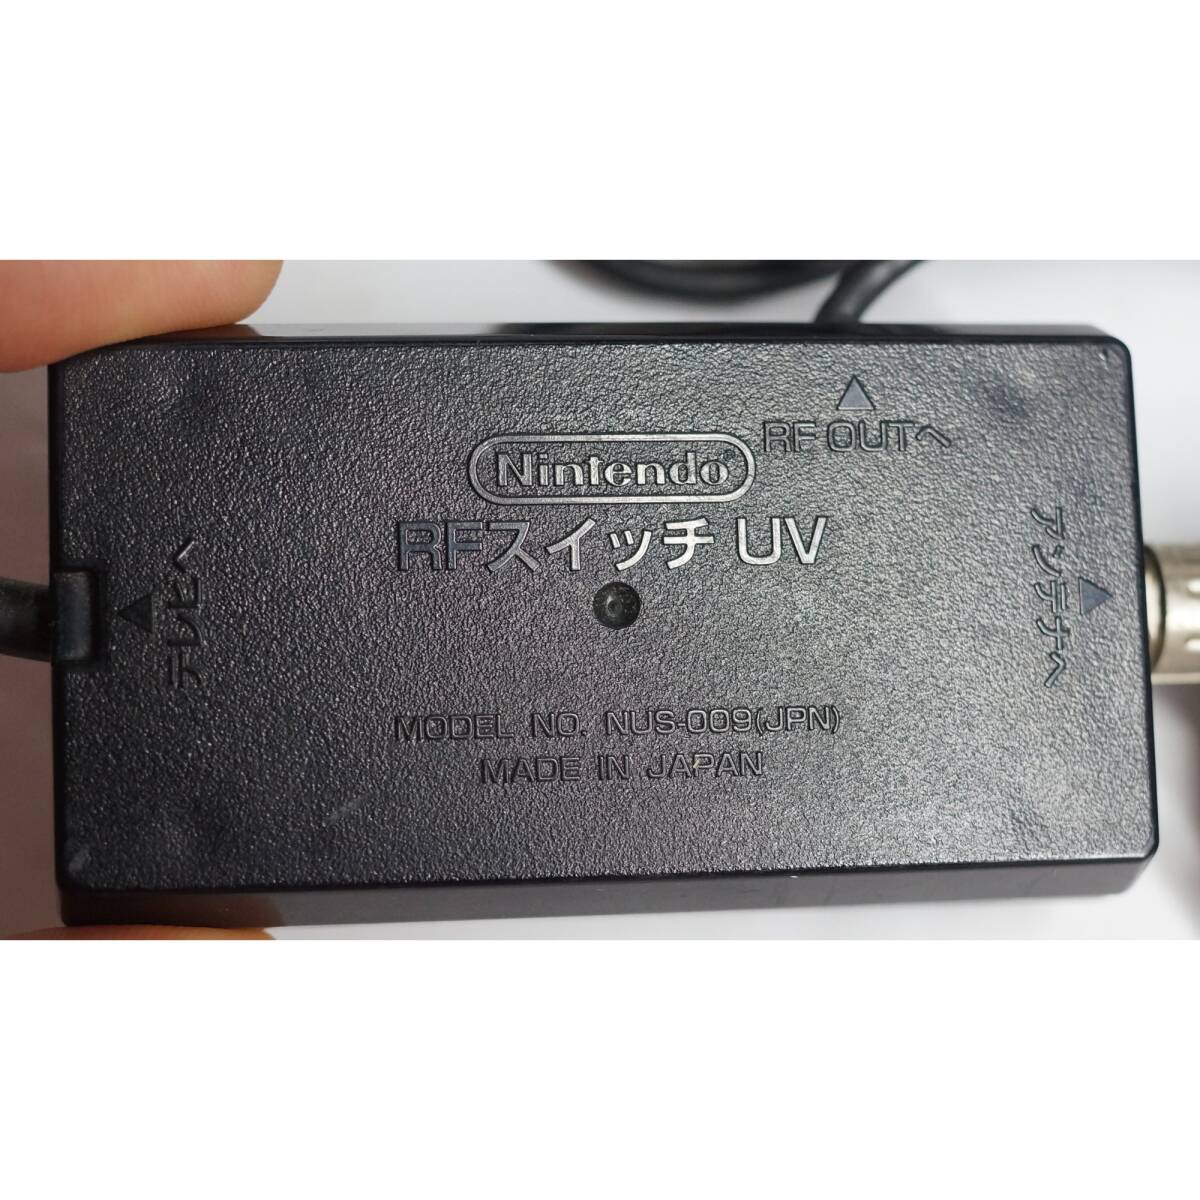 ニンテンドー RFスイッチ UV NUS-009(JPN)